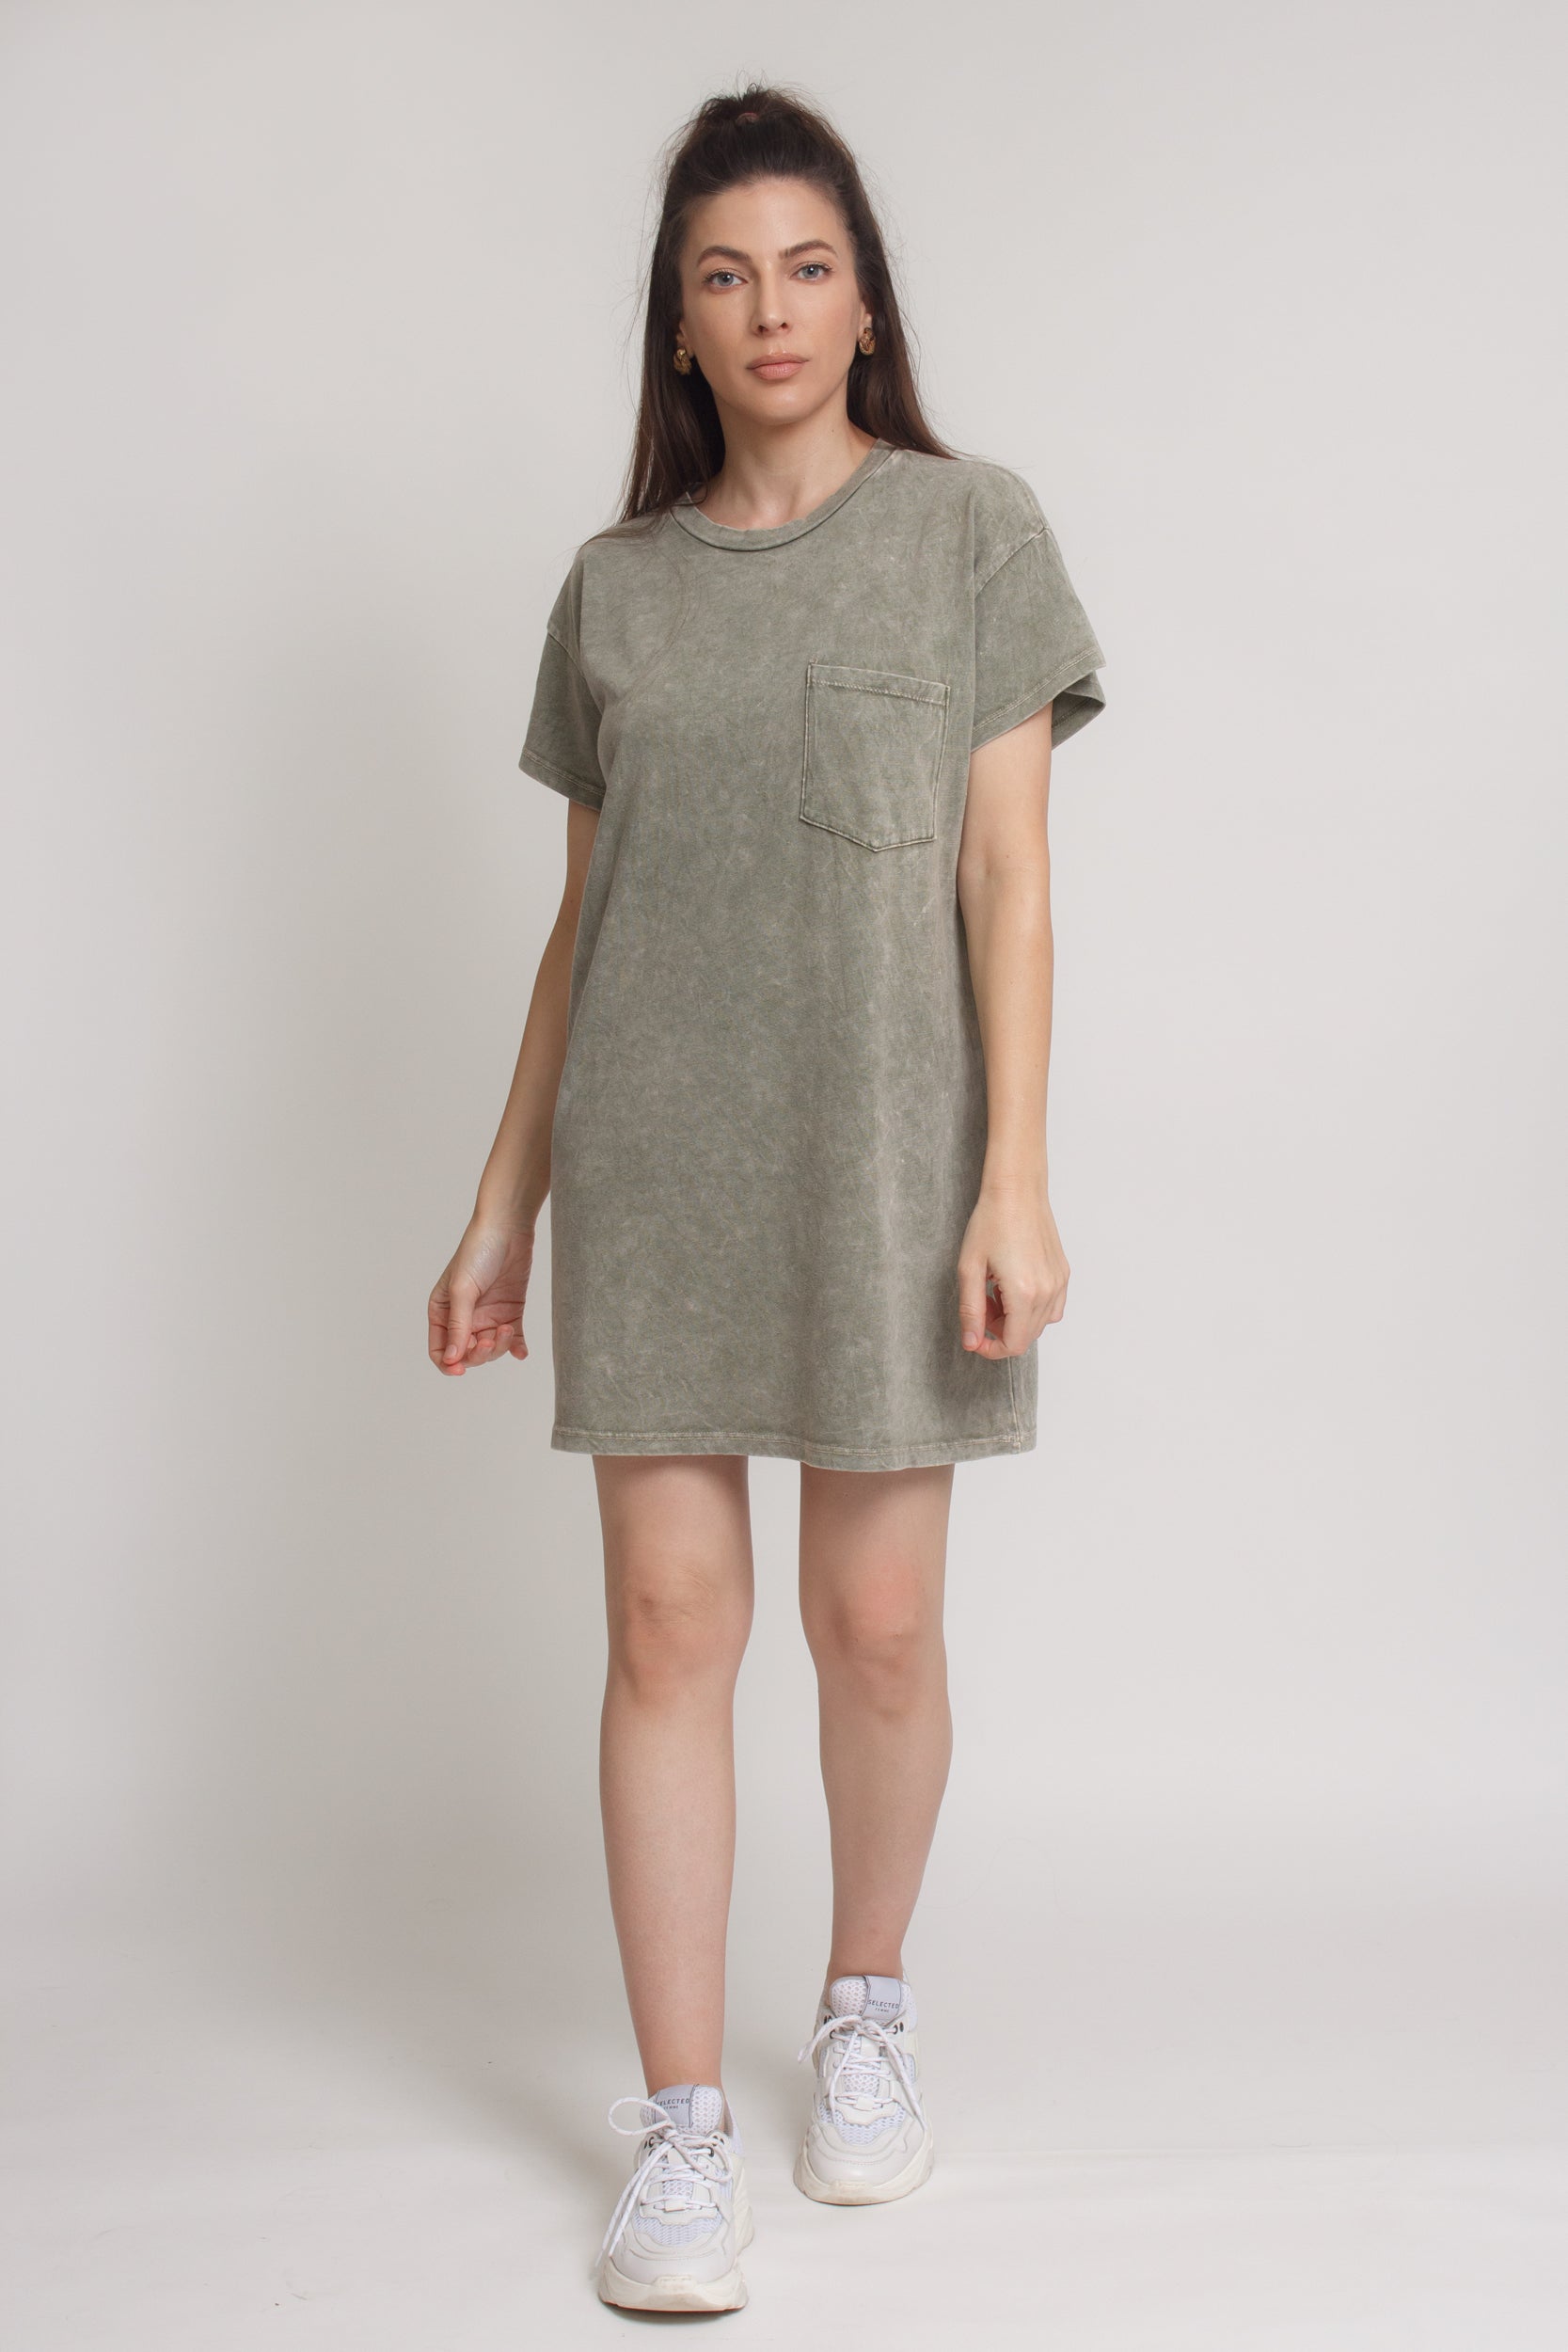 Oversized Pocket tee shirt dress, in vintage olive. Image 12